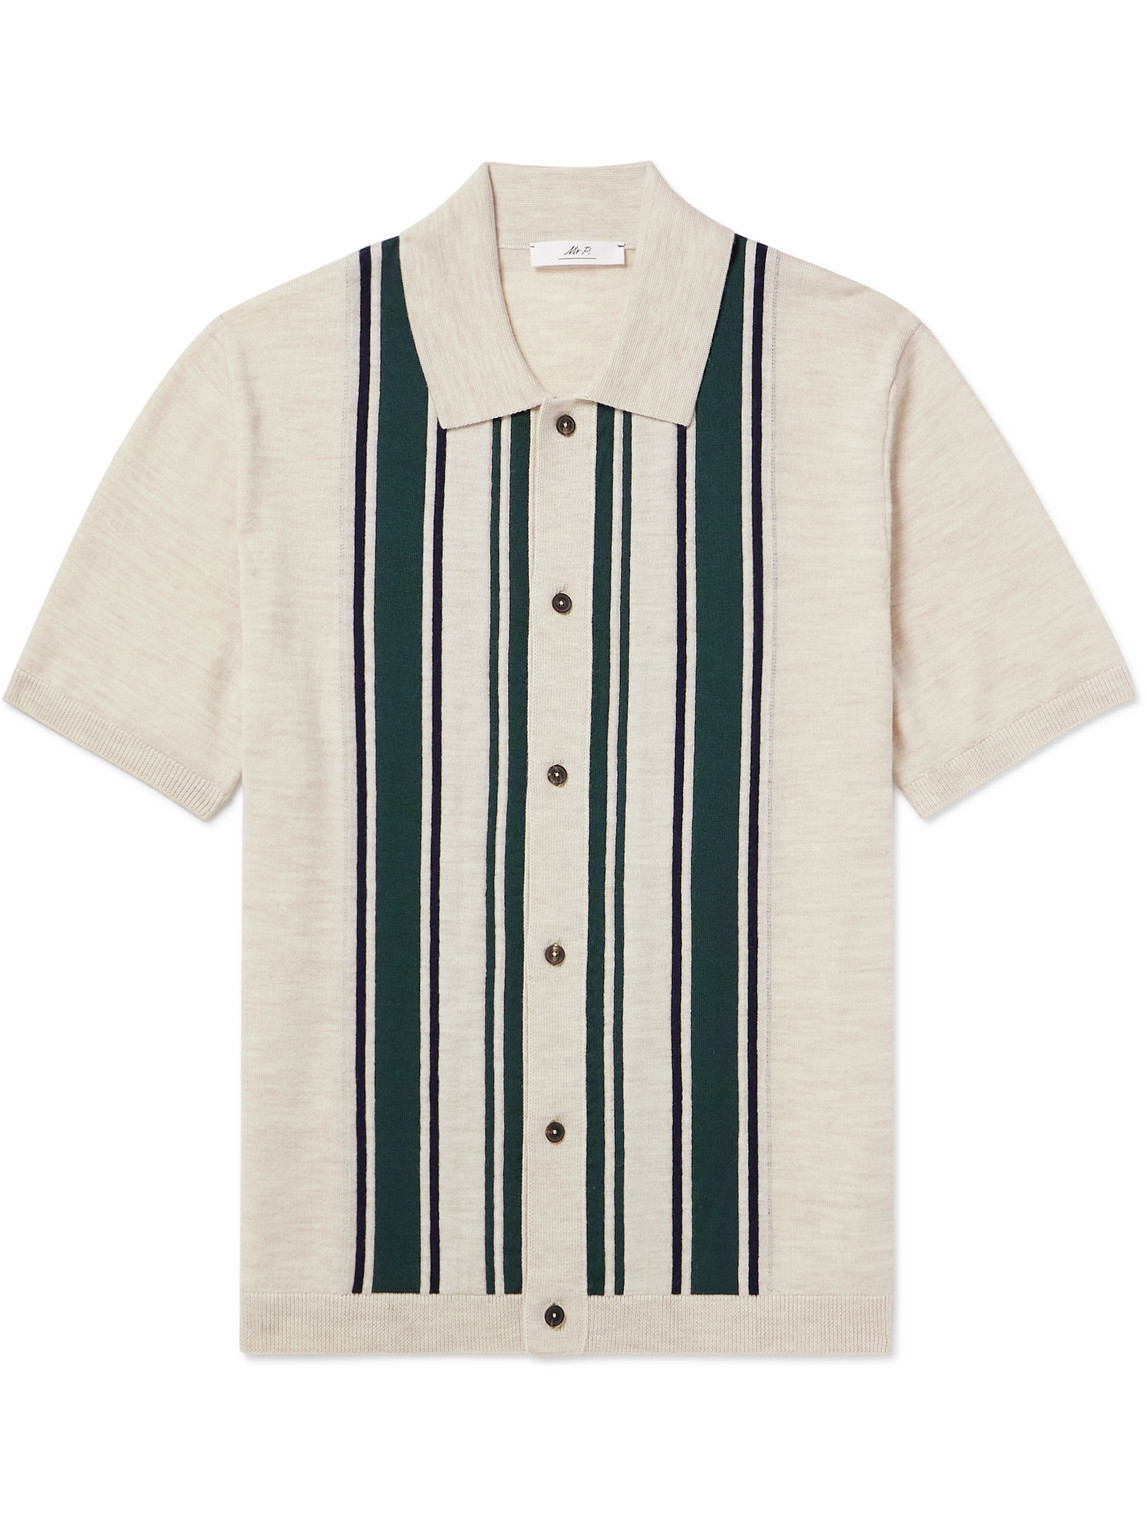 Mr P. - Golf Striped Merino Wool Polo Shirt - Men - Neutrals - L von Mr P.